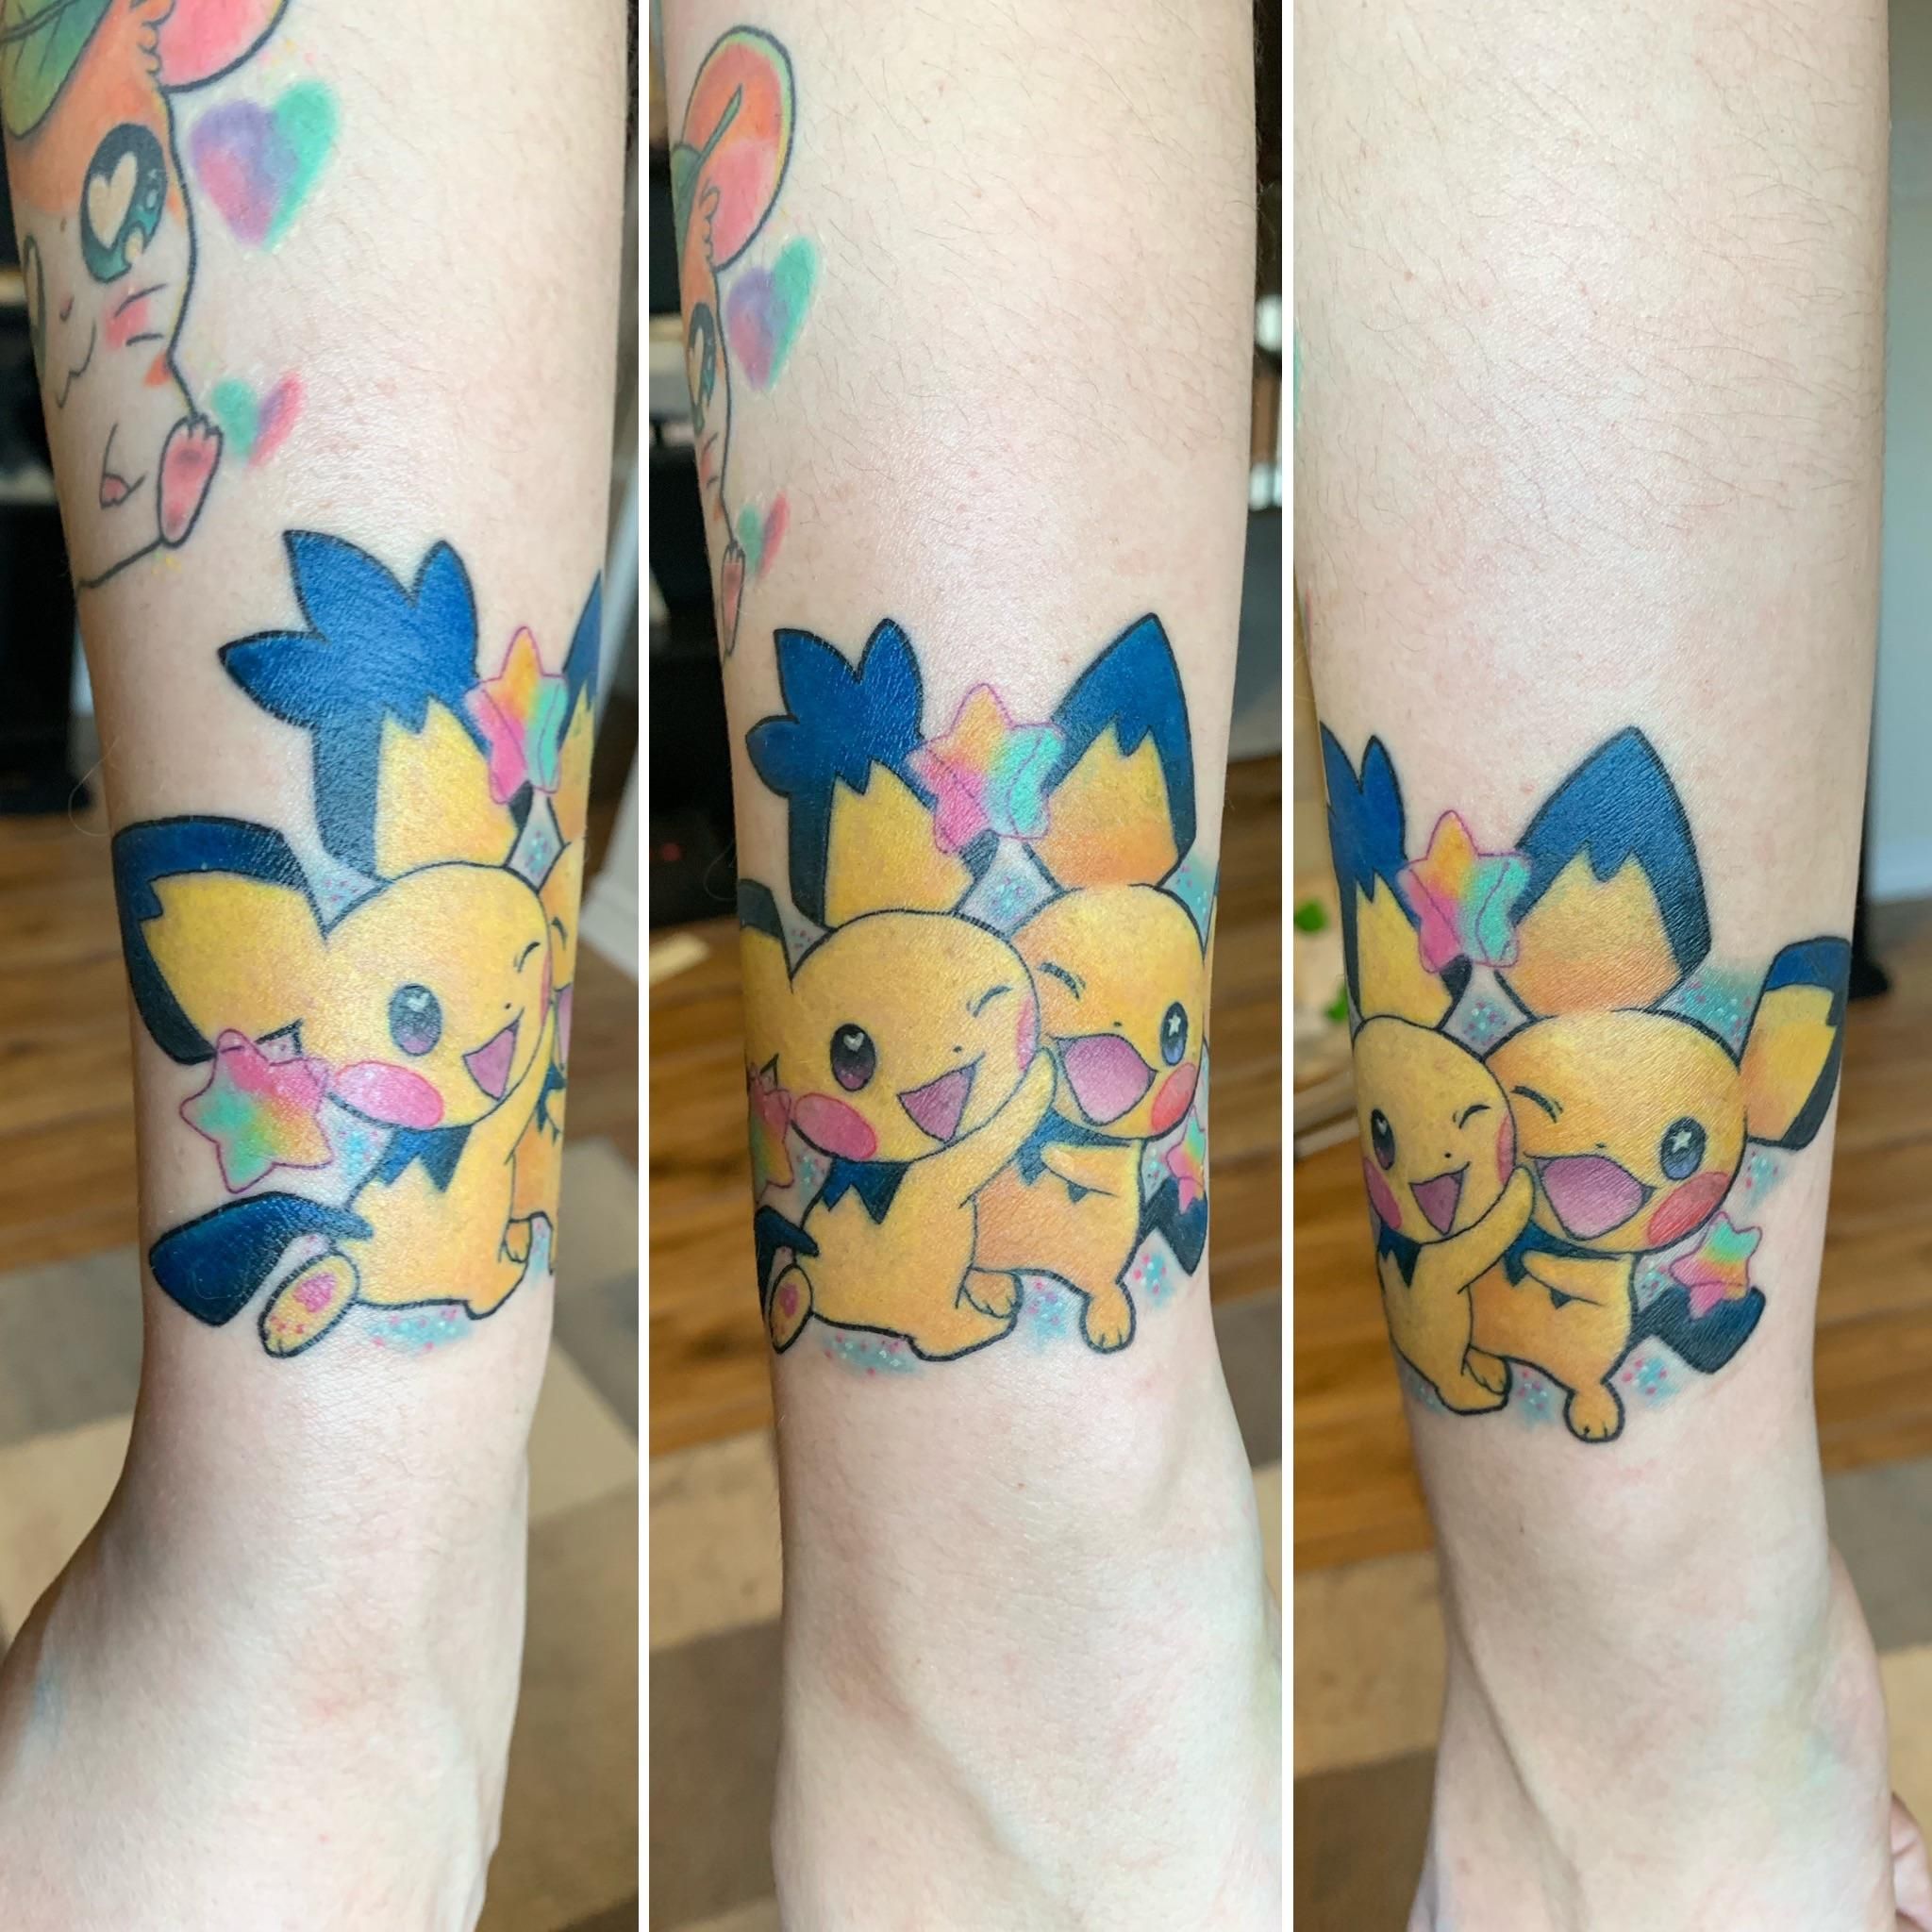 Pikachu tattoo @savshimi | Pikachu tattoo, Weird tattoos, Pokemon tattoo